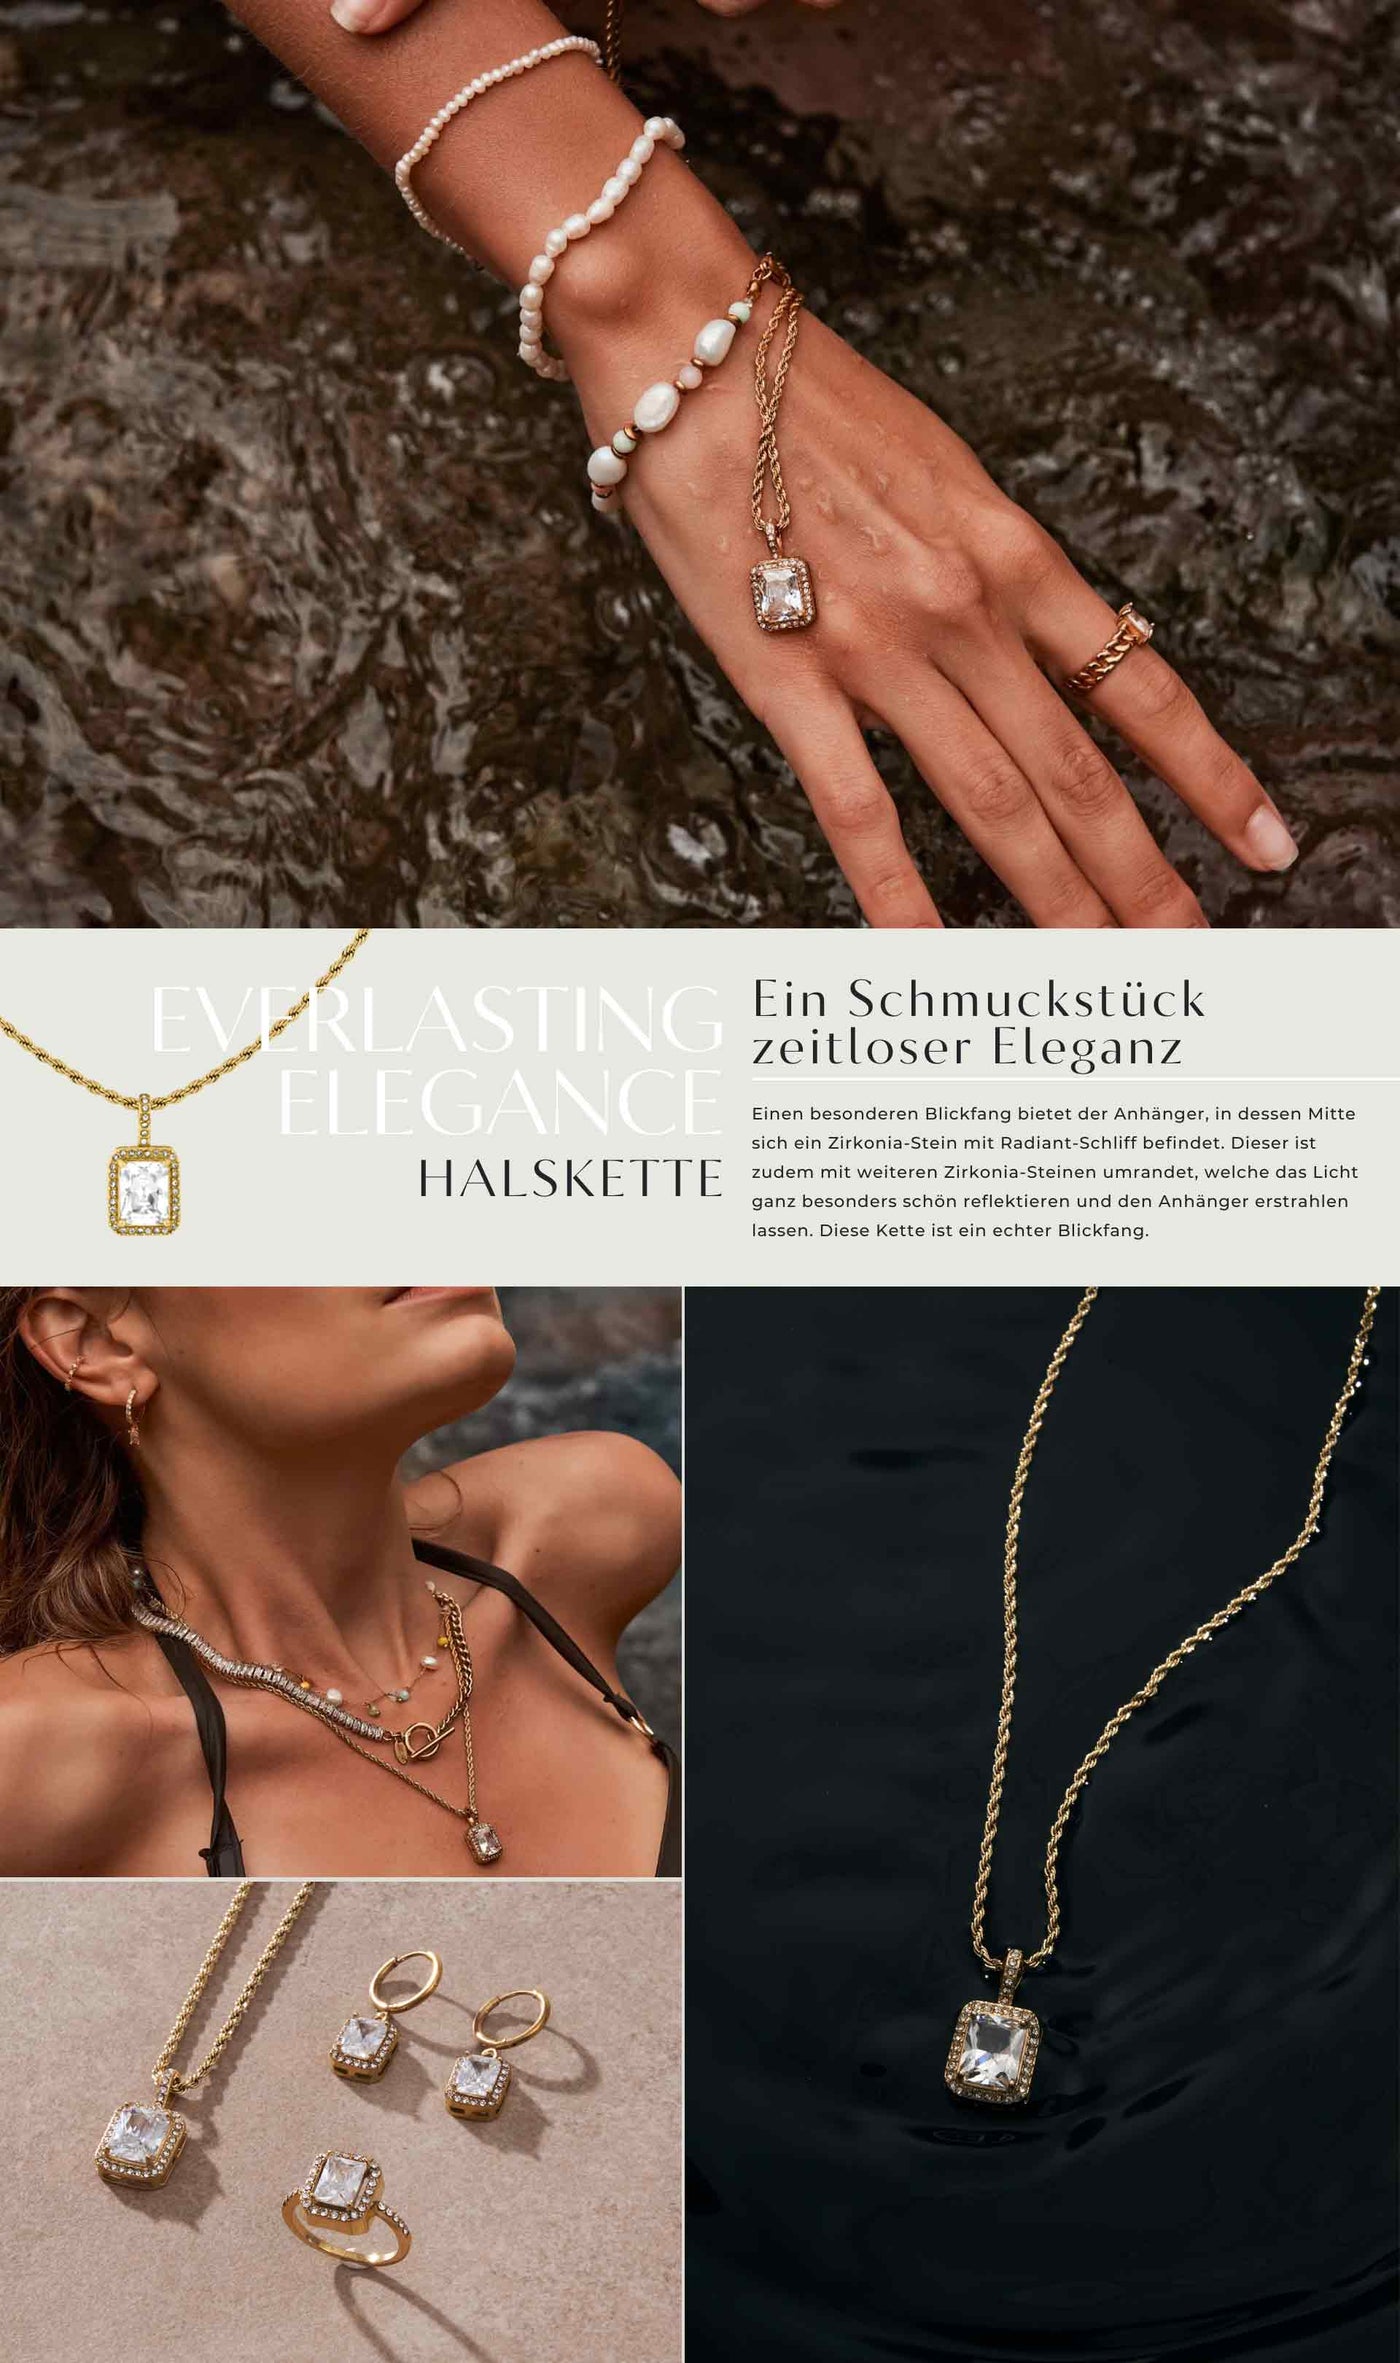 Everlasting Elegance Halskette by HI-LIFE